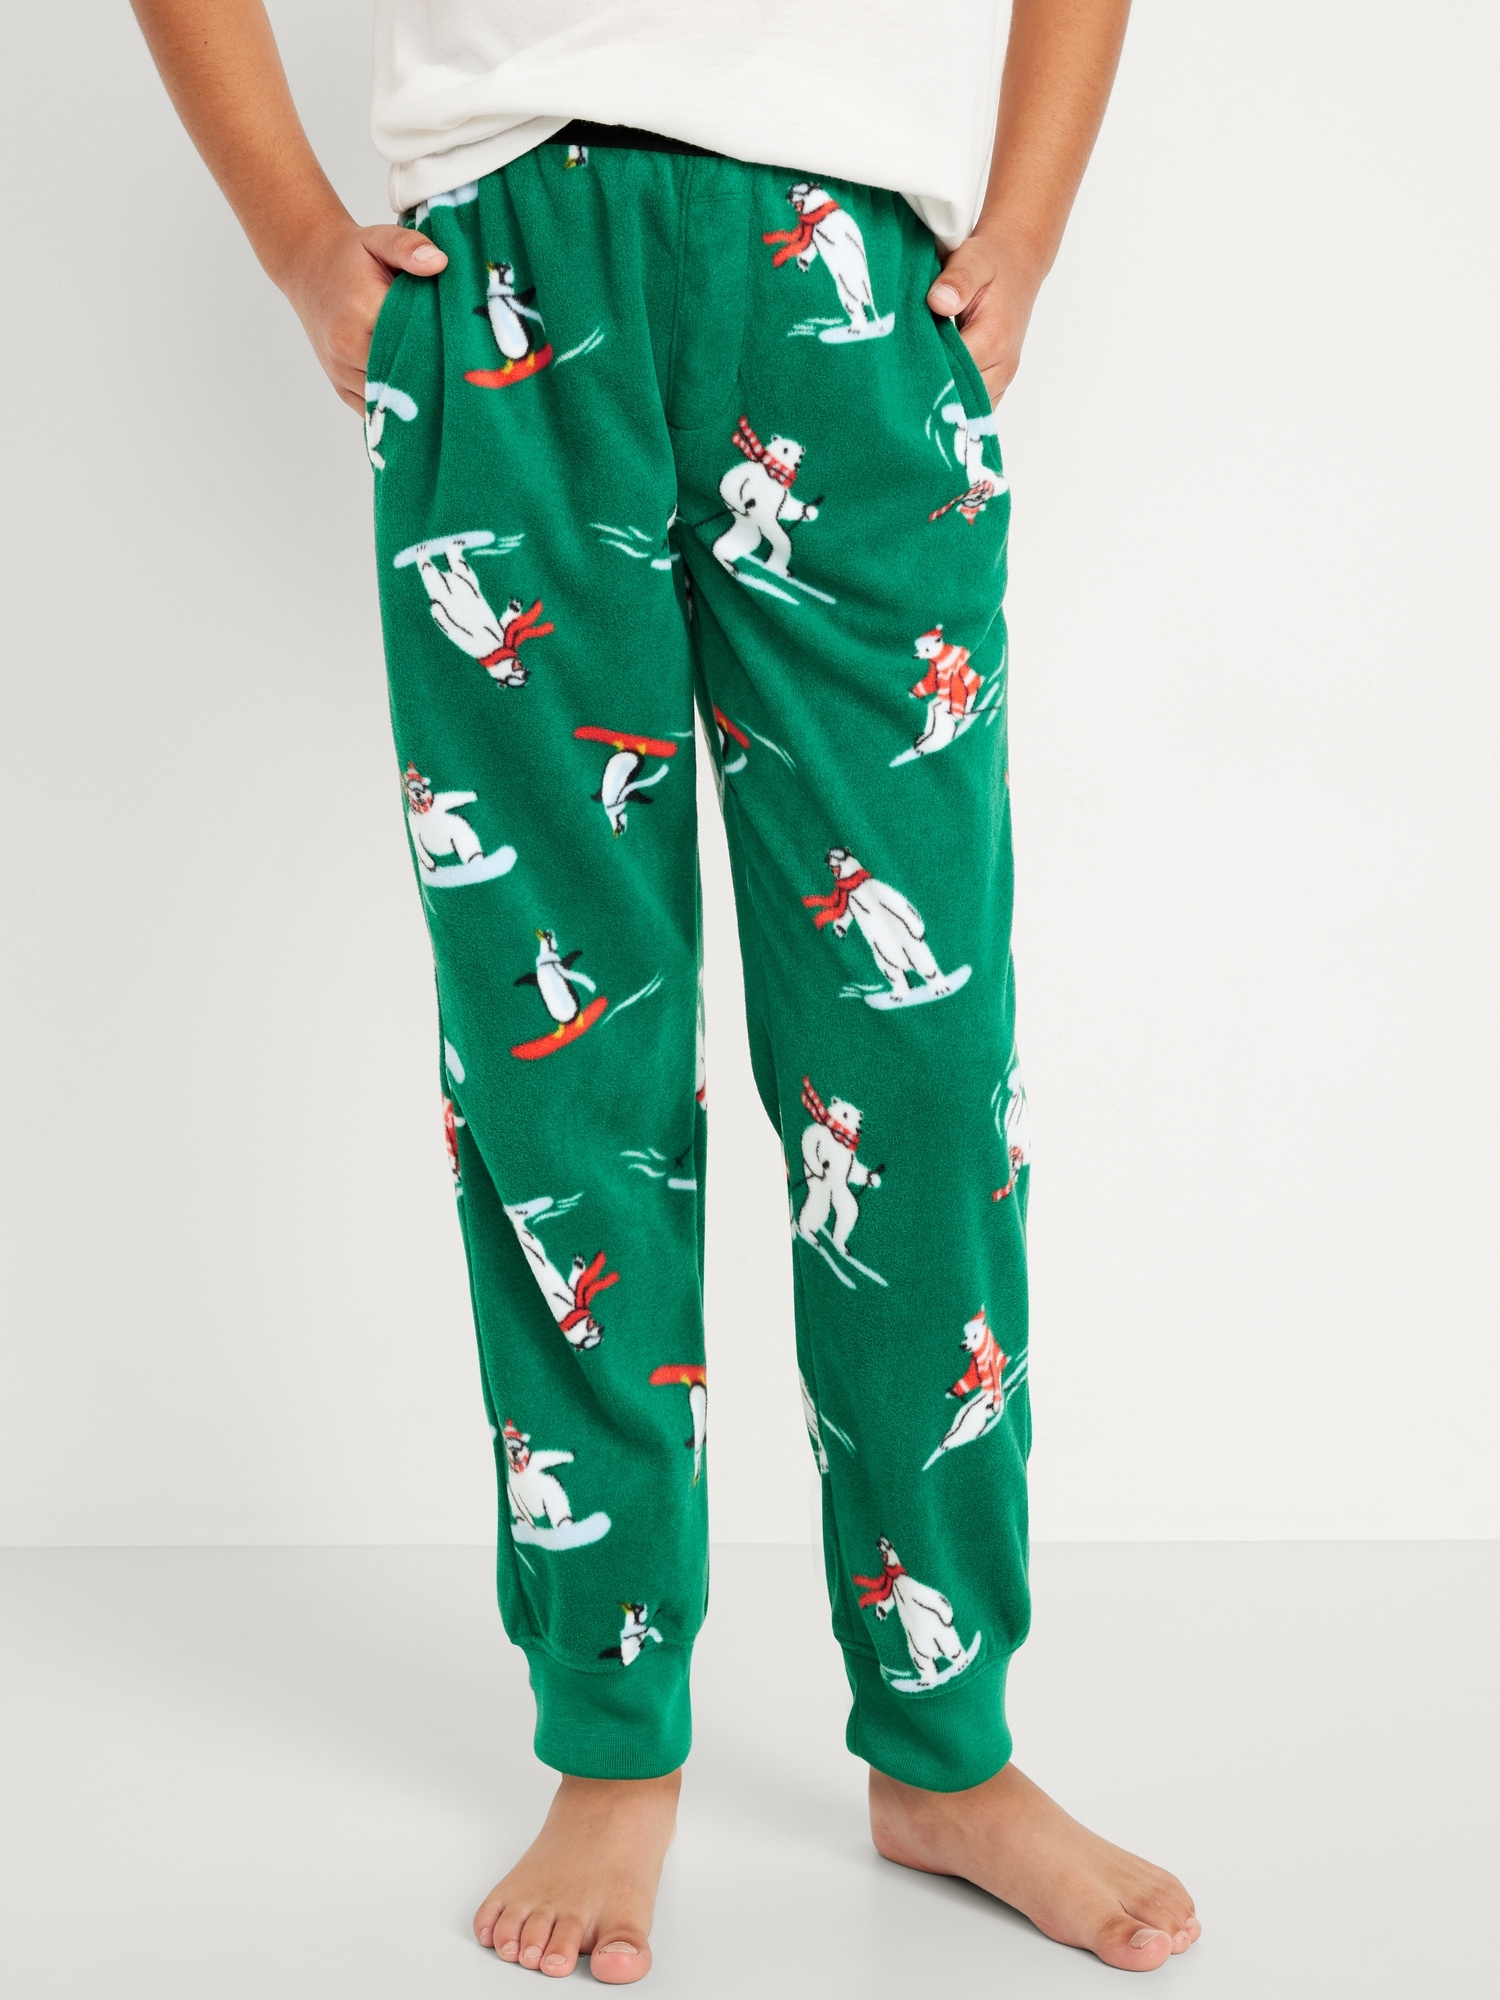 Printed Micro Fleece Pajama Jogger Pants for Boys